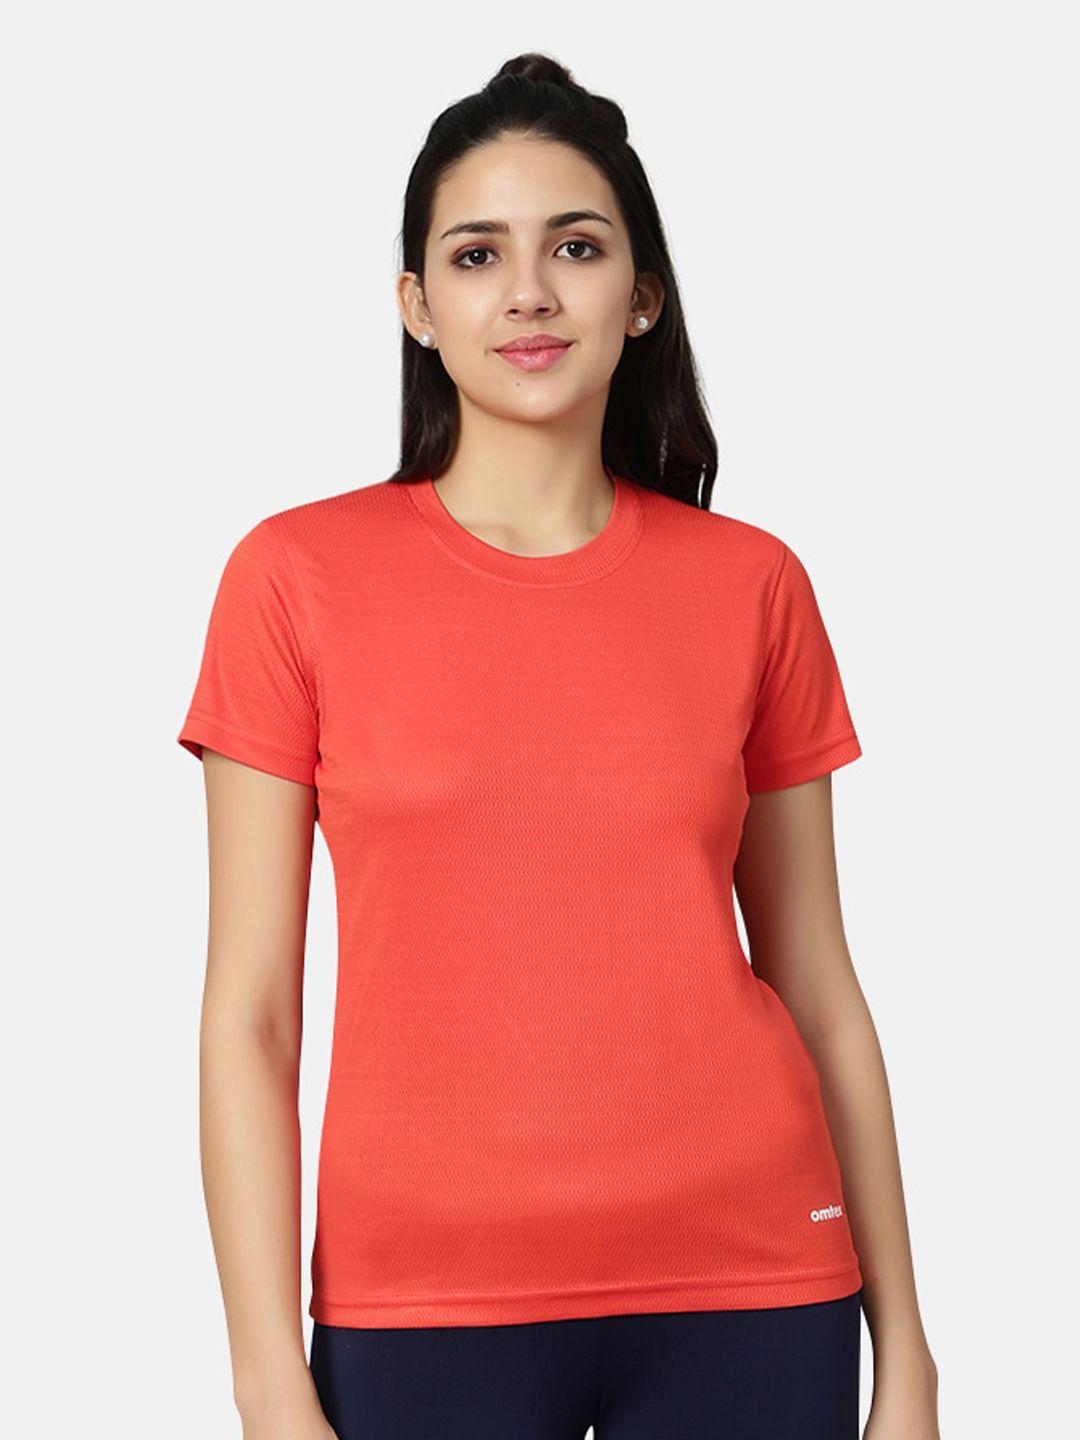 omtex women rust t-shirt